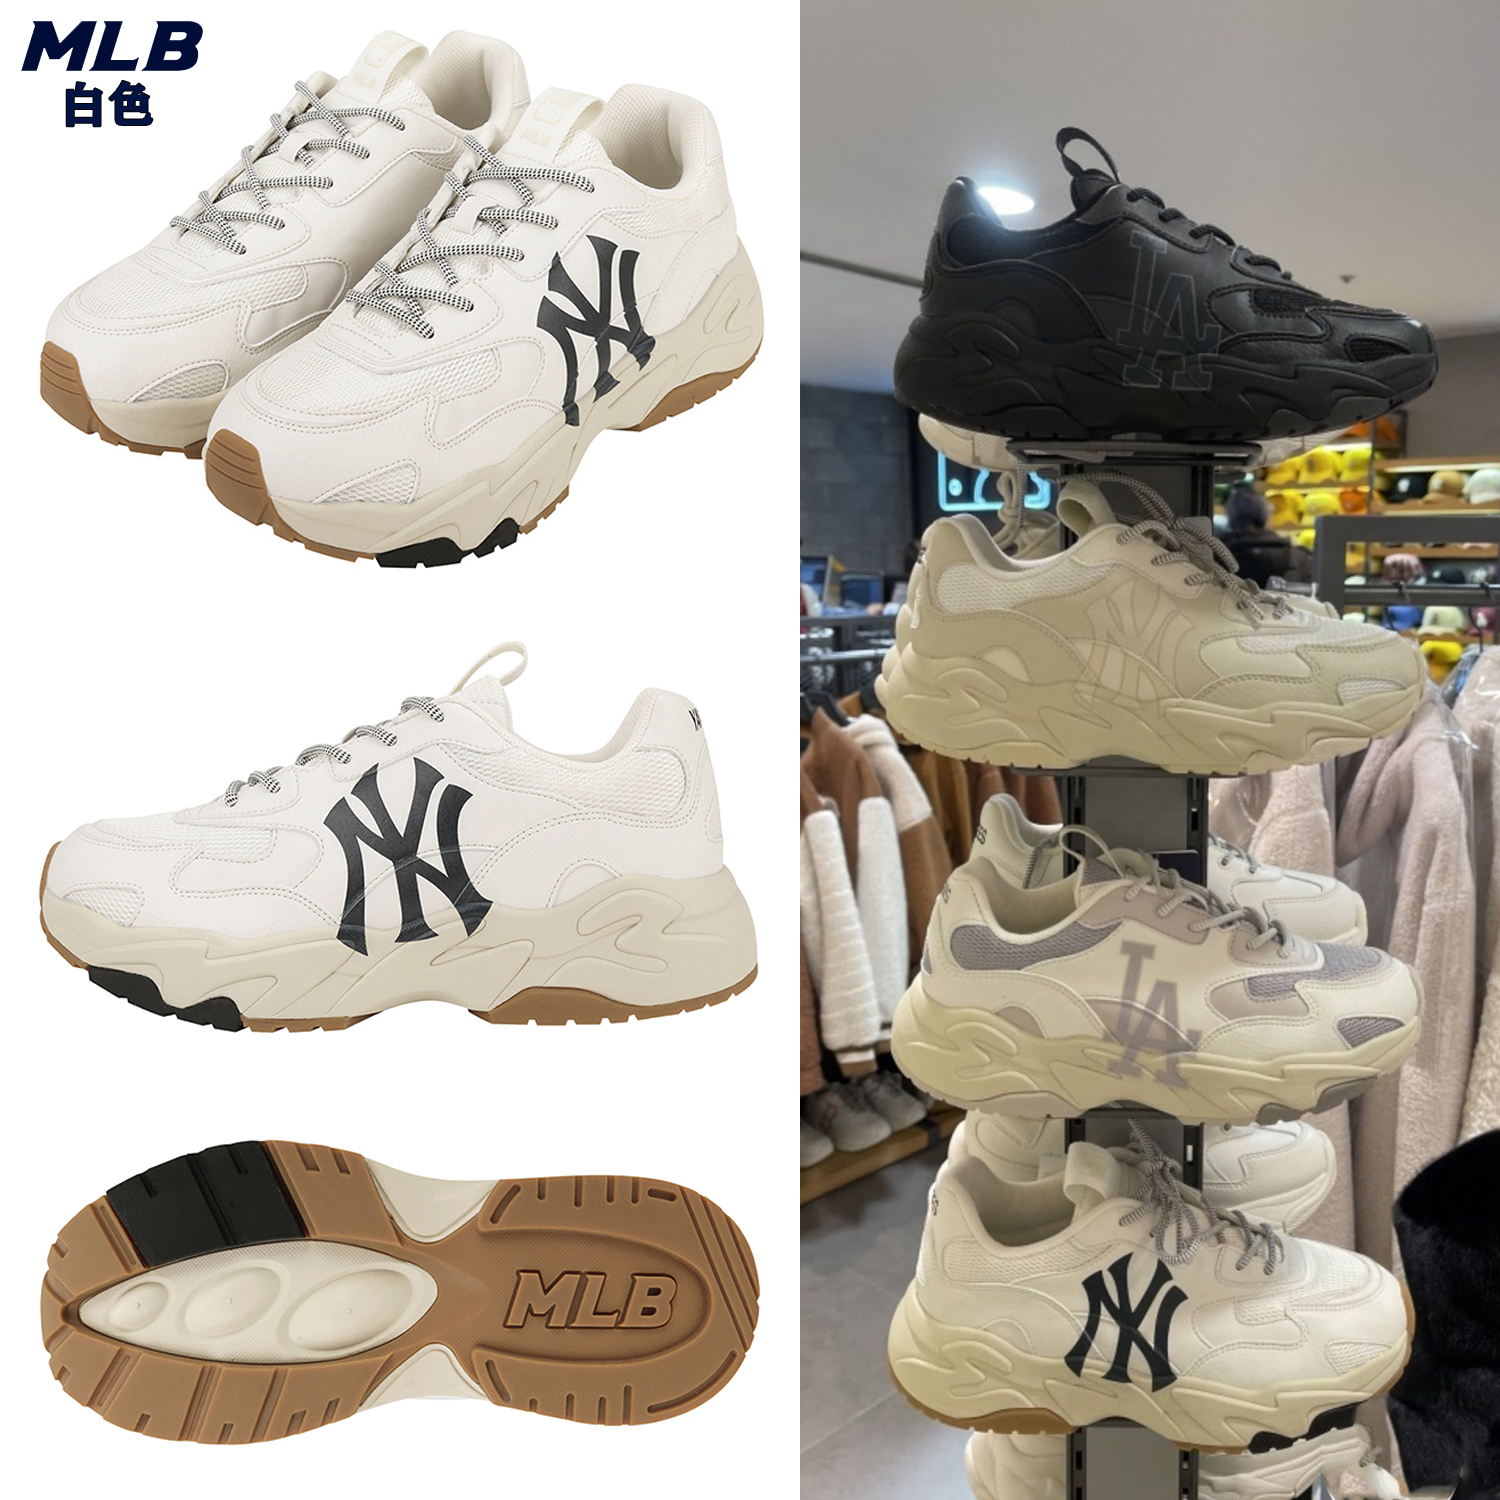 新款 MLB老爹鞋 MLB Big Ball Chunky LITE 韓版男女鞋 厚底休閒鞋 增高 輕便 百搭 時尚潮流